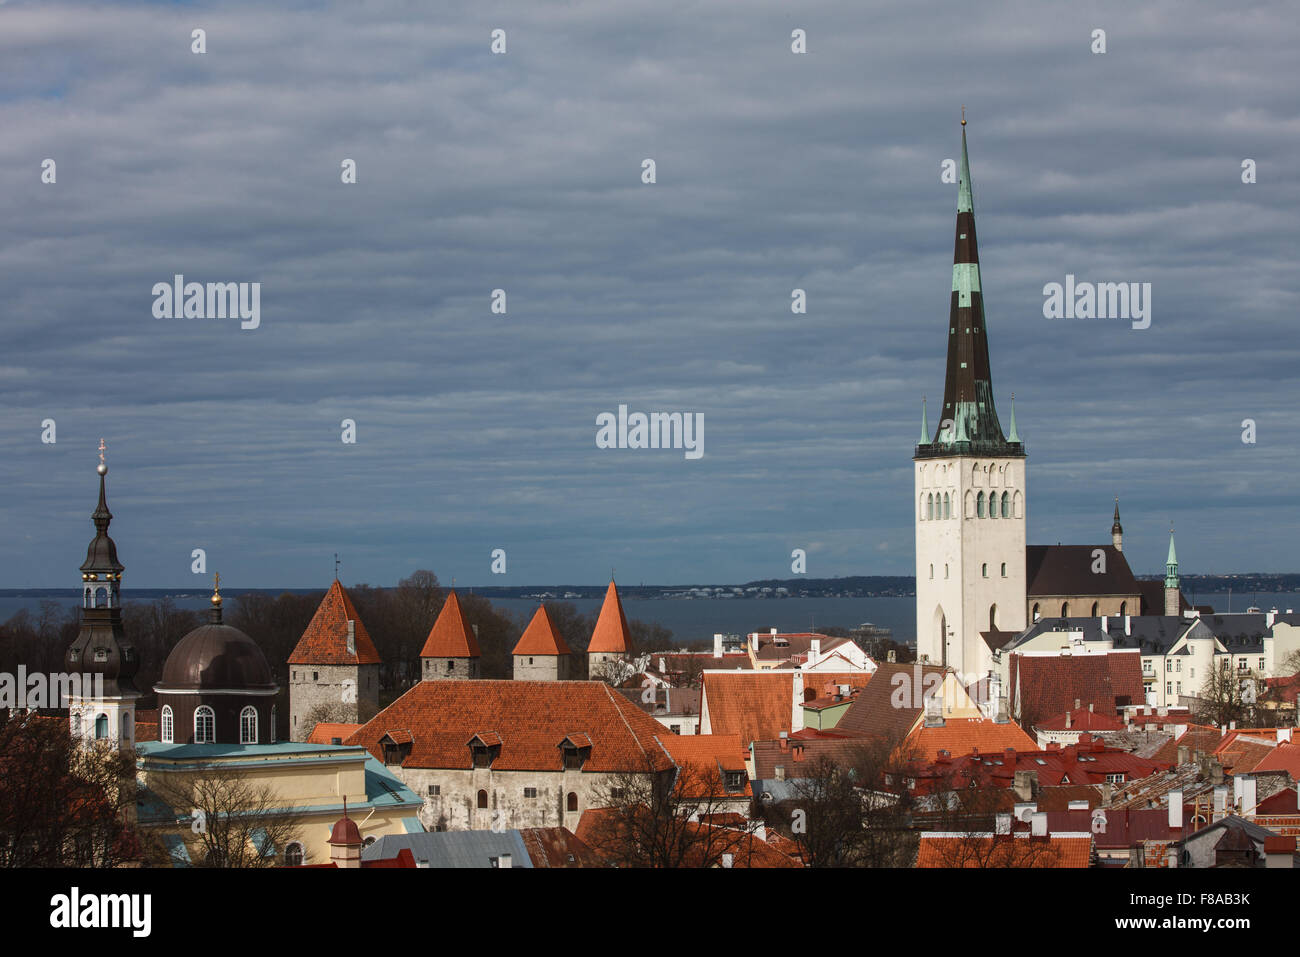 Tallinn old town panorama Stock Photo